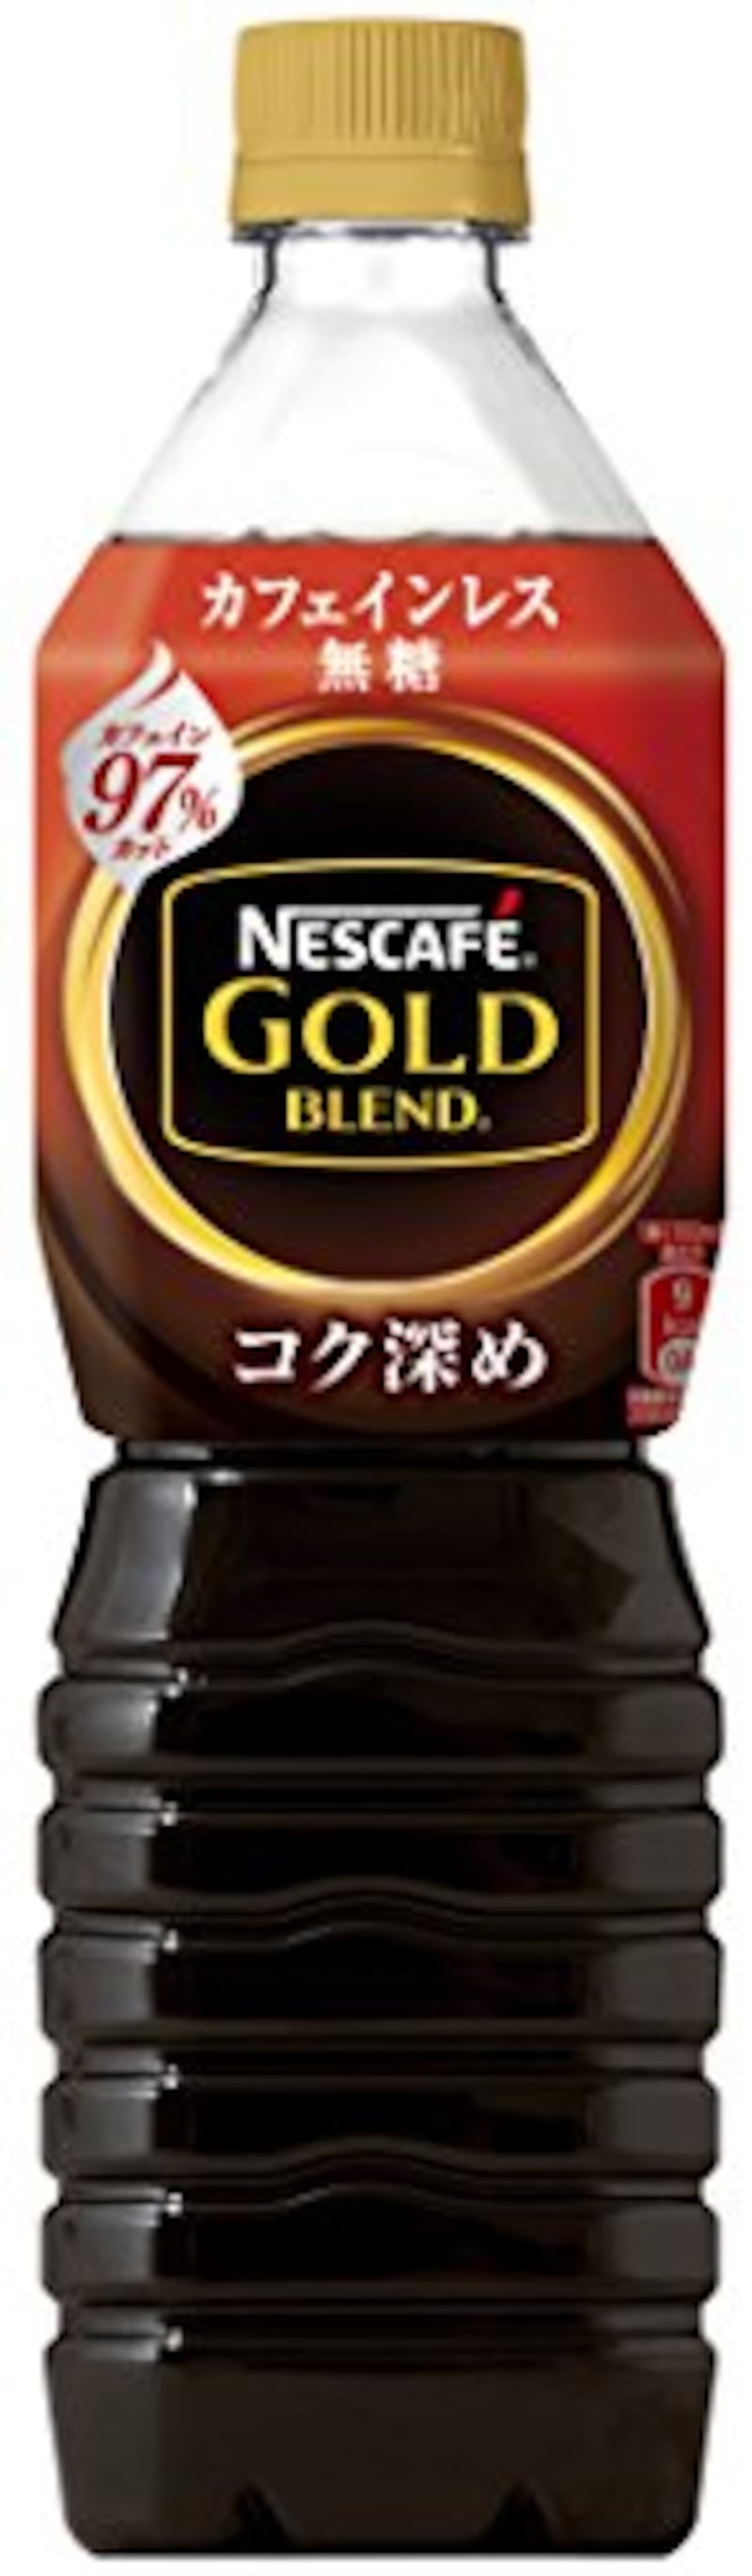 ネスレ日本,ネスカフェ ゴールドブレンド コク深め ボトルコーヒー 900ml×12本